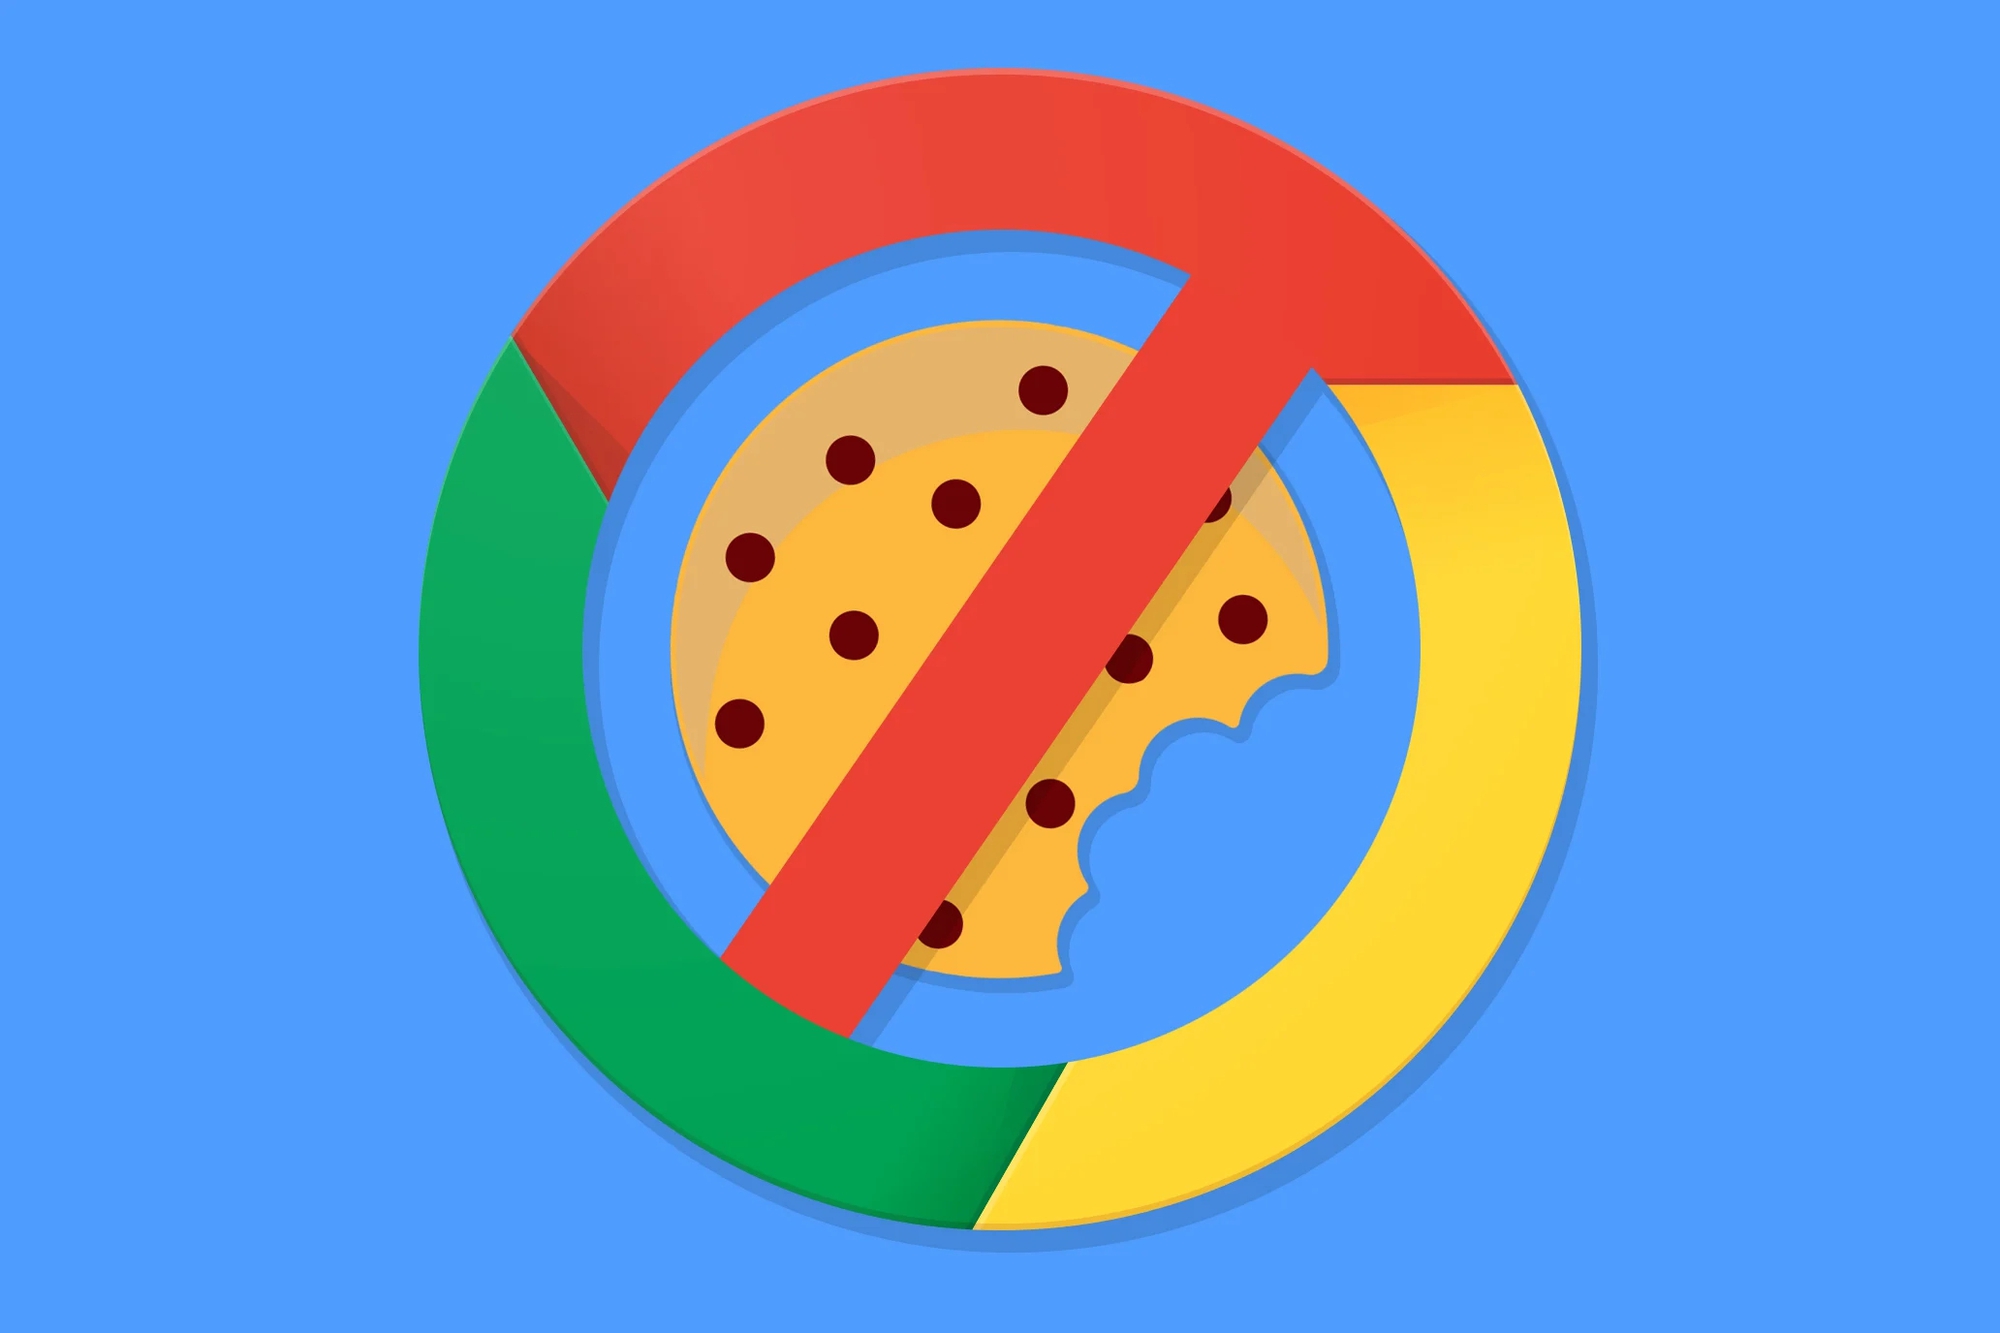 Công nghệ Hộp cát này (đã thay thế cho công nghệ FLoC- tiền thân bị chỉ trích nhiều mà Google gần đây đã bỏ qua) đề cập đến một ngăn xếp công nghệ nhắm mục tiêu quảng cáo đang phát triển - và hiện đang được giám sát rất chặt chẽ - mà Google đã đề xuất để thay thế quảng cáo nhắm mục tiêu dựa trên cookie theo dõi trong Chrome, mà họ cho rằng sẽ tốt hơn vì quyền riêng tư của người dùng nhưng vẫn hiệu quả để tạo doanh thu quảng cáo. Ảnh: @AFP.